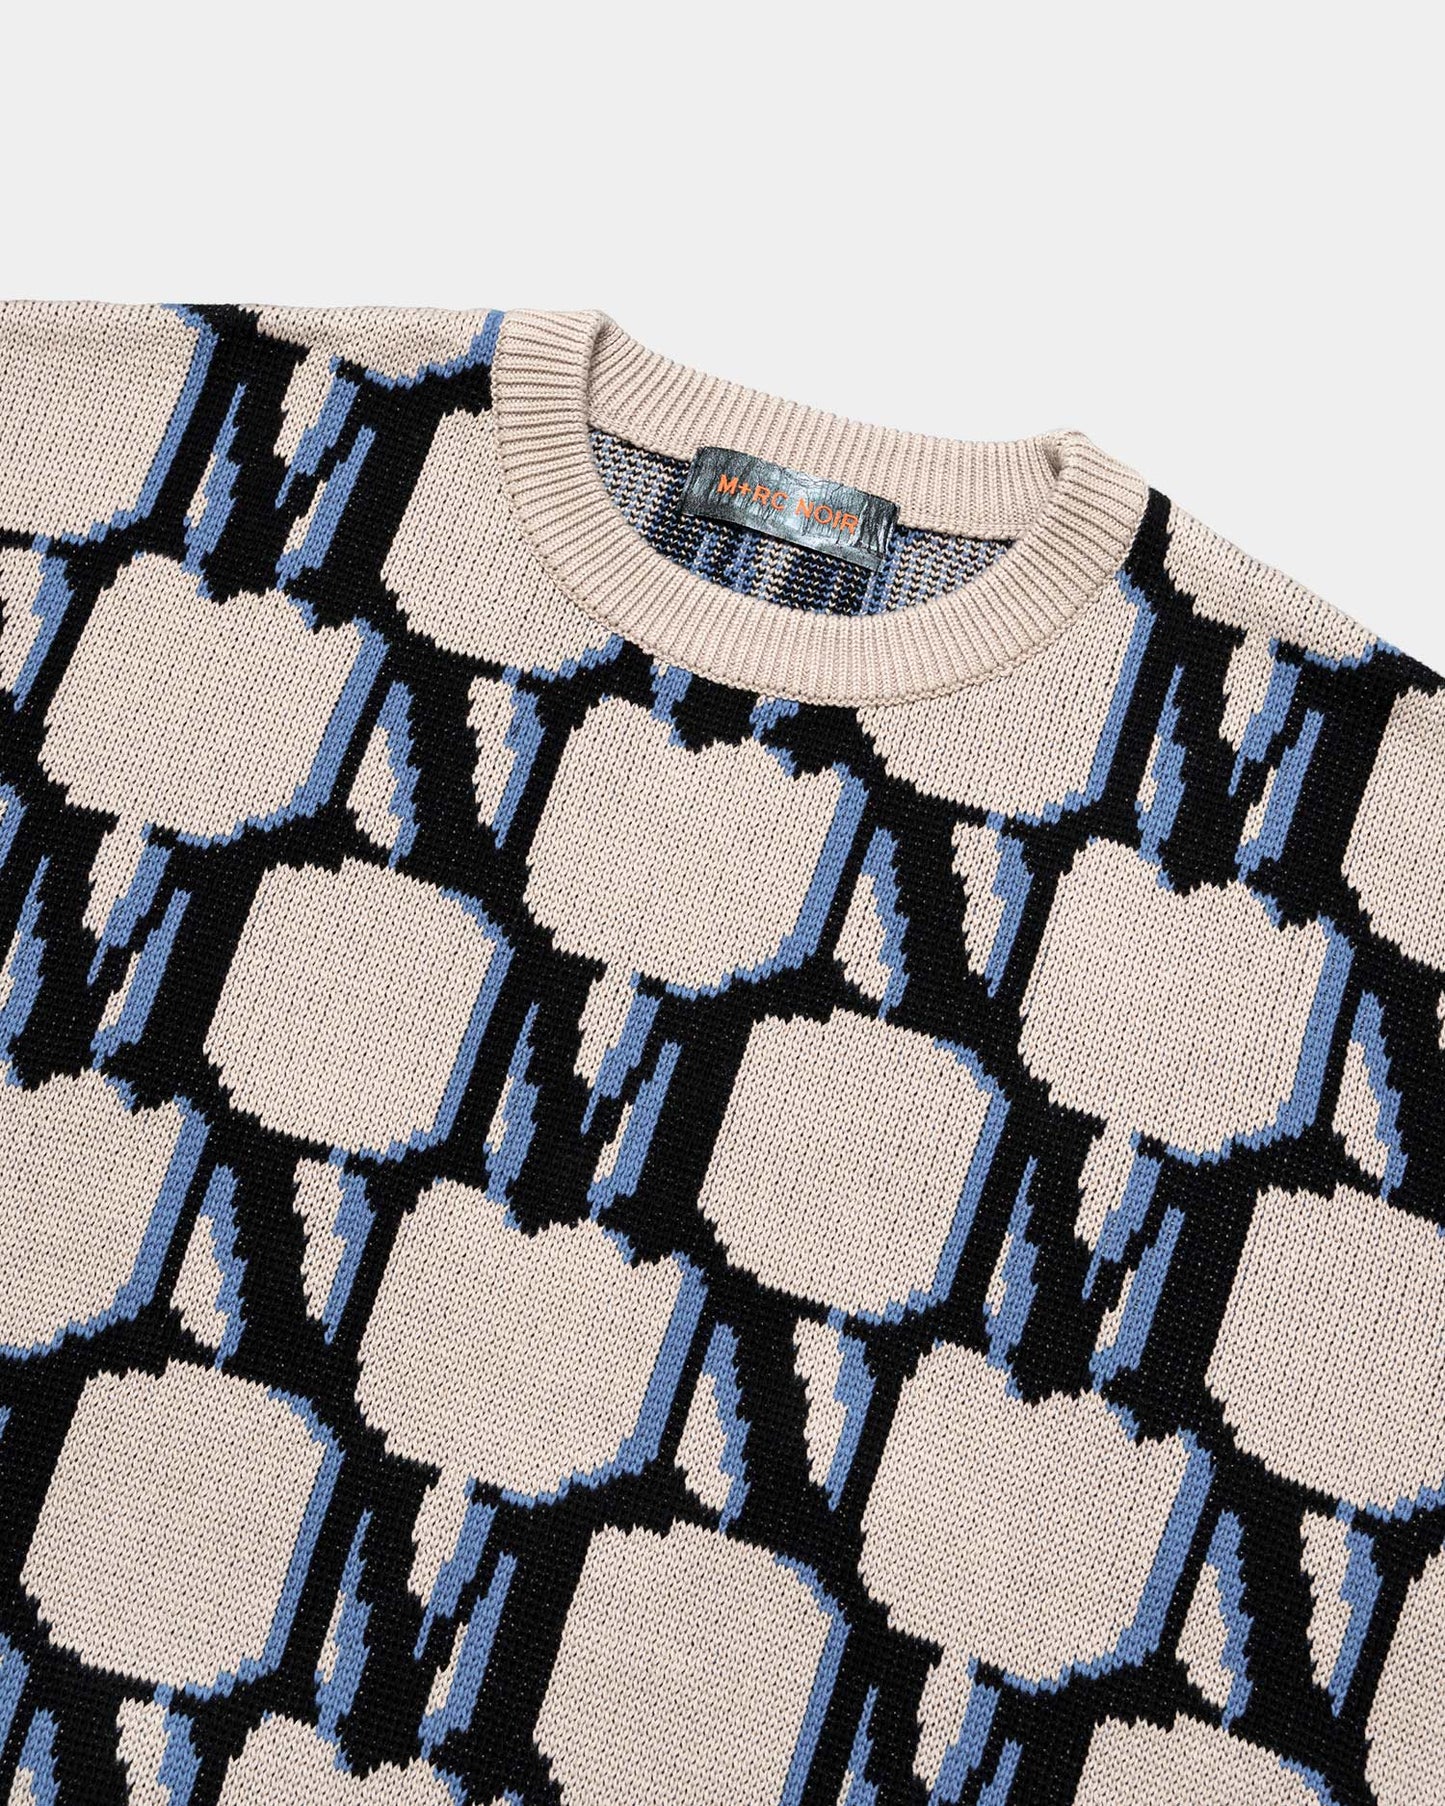 Monogram Intarsia Knitted Beige Sweater - mrcnoir